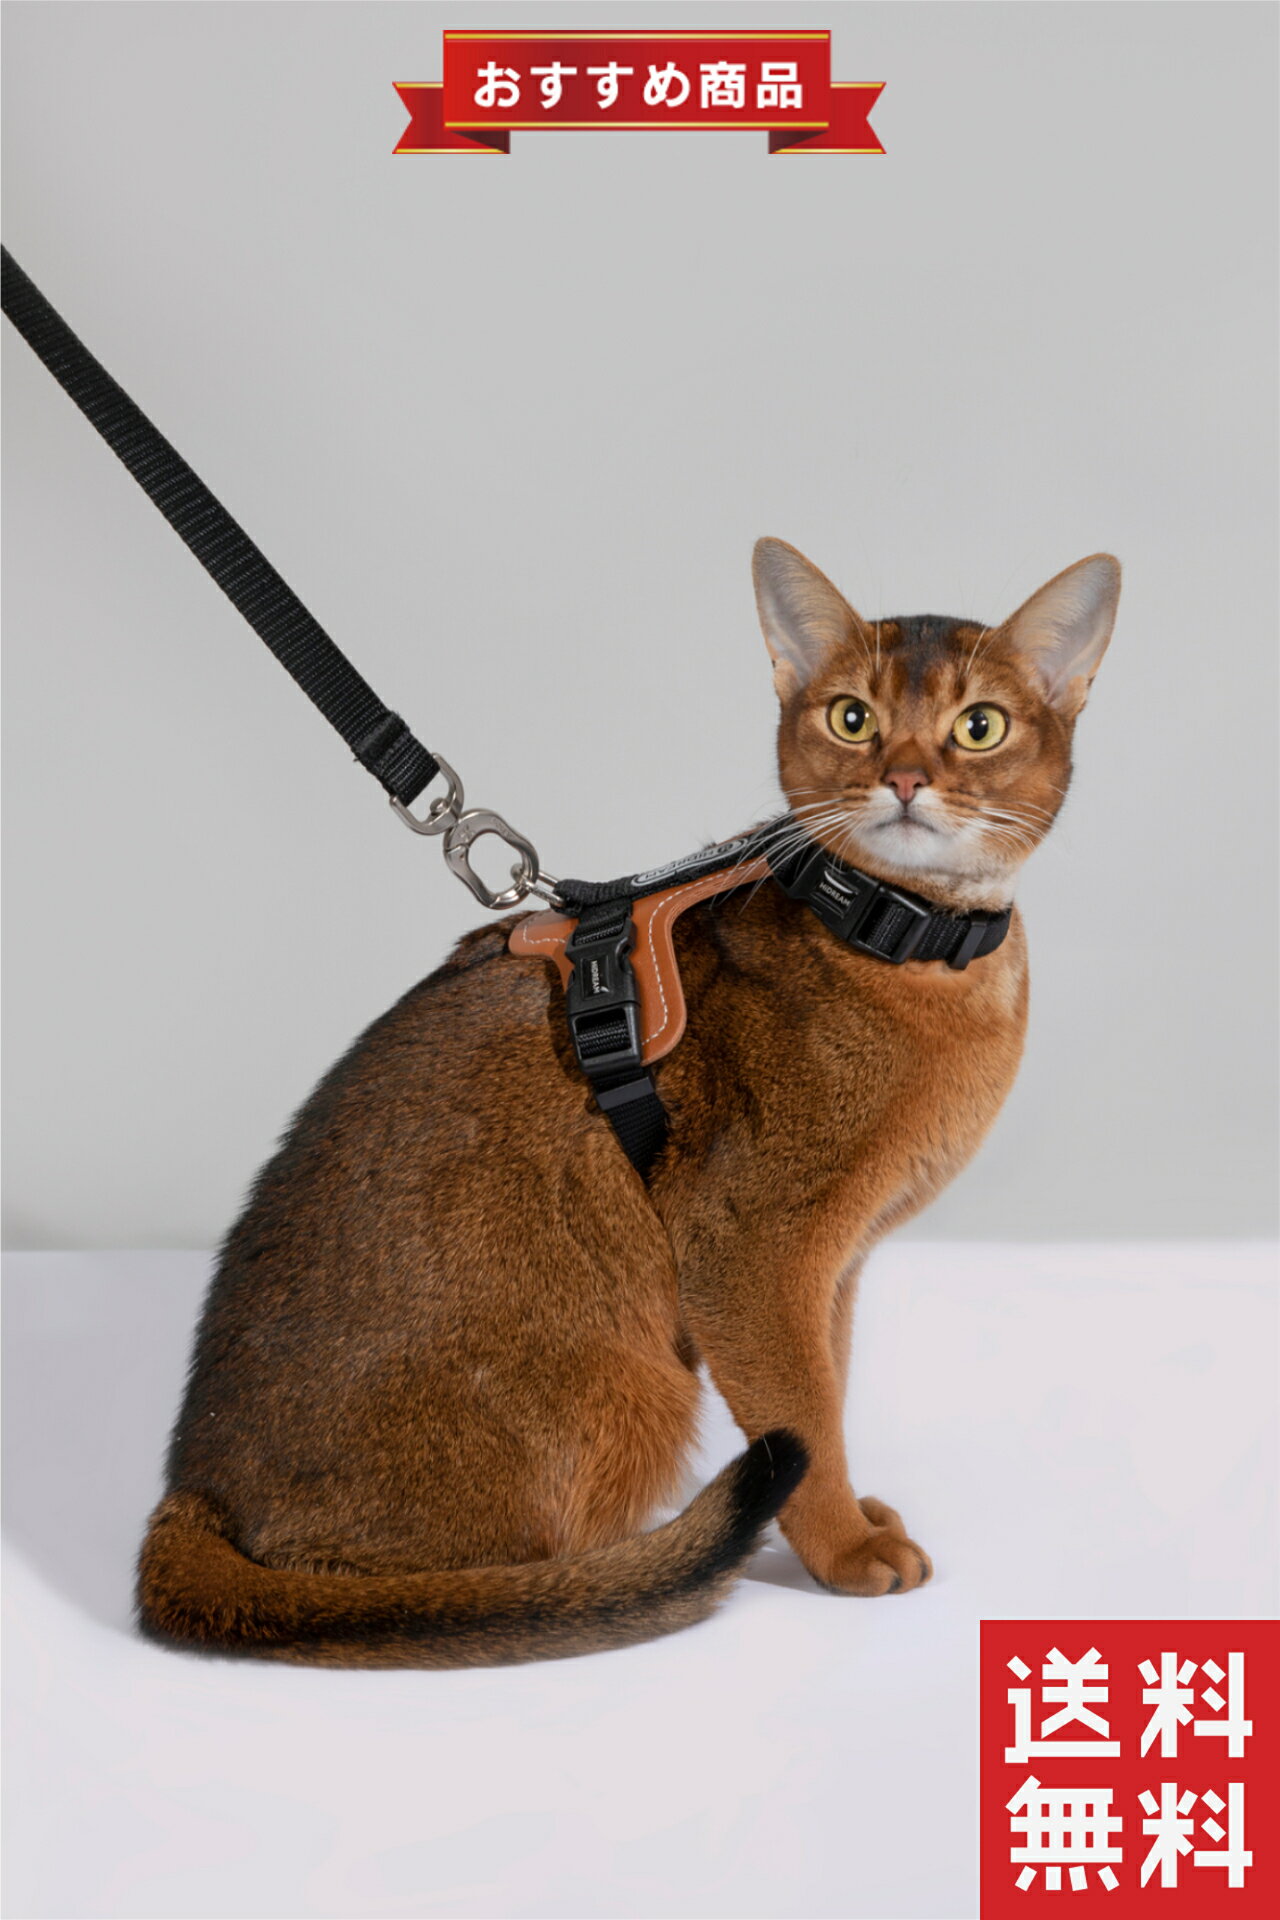 サイズ リードの長さ 130cm 首周り 20cm-31cm 胴回り 32cm-50cm 本体の重さ 約120g 推奨体重 0~8kg 特長 調節可能なサイズ 猫の体型に合わせて調整可能です。首と胴回りのサイズを調節して、最適なフィット感を実現します。 安全ロックバックル 亜鉛合金スナップを採用しています。しっかりとロックされ、猫が逃げ出すことを防ぎます。 耐久性と安全性 ナイロン素材で作られており、ペットの安全を確保しながら長時間の使用に耐える耐久性があります。 快適な装着感 パッド入りの胸部分と背中部分がペットの体にやさしくフィットし、快適な装着感を提供します。 素材 ナイロン 強度があり、柔軟性があります。猫の動きに合わせてフィットしやすく、快適です。 合成皮革 防水性があり、汚れや水濡れに強いです。清潔さを保ちながら長くご使用いただけます。 亜鉛合金 耐久性が高く、しっかりとロックされます。安全性を確保しながら便利に使えます。 使用方法 ハーネスをペットの体にフィットさせます。 バックルやストラップを調整して、きつすぎず緩すぎないようにします。 リードをハーネスに取り付けます。 散歩中にペットが引っ張っても、ハーネスがペットの体に均等に力を分散するので、首や背中への負担が軽減されます。 ペットの安全と快適さを考えたこのハーネスは、散歩中のペットとのコミュニケーションを向上させるだけでなく、飼い主の負担も軽減します。猫ハーネス 小型犬 リードセットは、お散歩やお出かけに最適なアイテムです。 このハーネスは、軽量で抜けにくく、簡単に装着できるため、愛猫や小型犬にストレスを与えません。 素材には耐久性のあるナイロンと上質な合成皮革を使用しており、お手入れも簡単です。 安全性を考慮した設計で、安全ロックバックルと亜鉛合金のスナップ、Dリンクが特徴です。 快適な装着感を提供するため、調節可能なデザインが採用されています。これにより、愛猫や小型犬の体型に合わせてフィット感を調整でき、安心して使用できます。合成皮革の部分は高級感があり、見た目もスタイリッシュです。 お散歩や旅行、病院への訪問など、さまざまなシーンで活躍するこのハーネスは、愛猫や小型犬との時間をより安全で快適にします。信頼できる素材と機能性を兼ね備えたこの商品で、大切なペットとの絆を深めましょう。